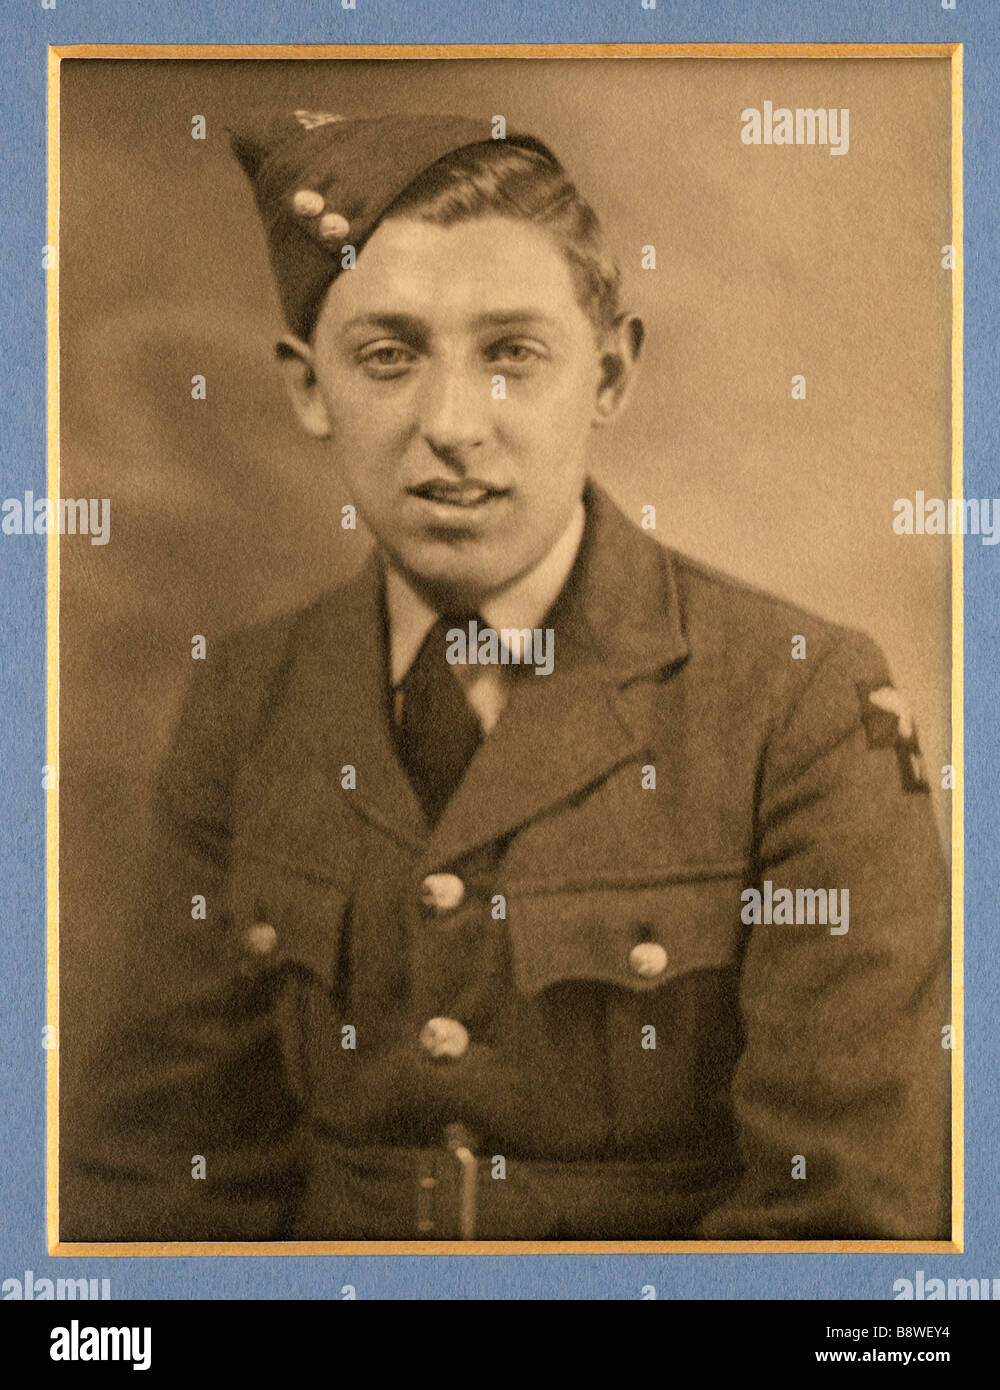 Giovane uomo nella Royal Air Force britannica uniformi durante la Seconda Guerra Mondiale nel 1939 Foto Stock